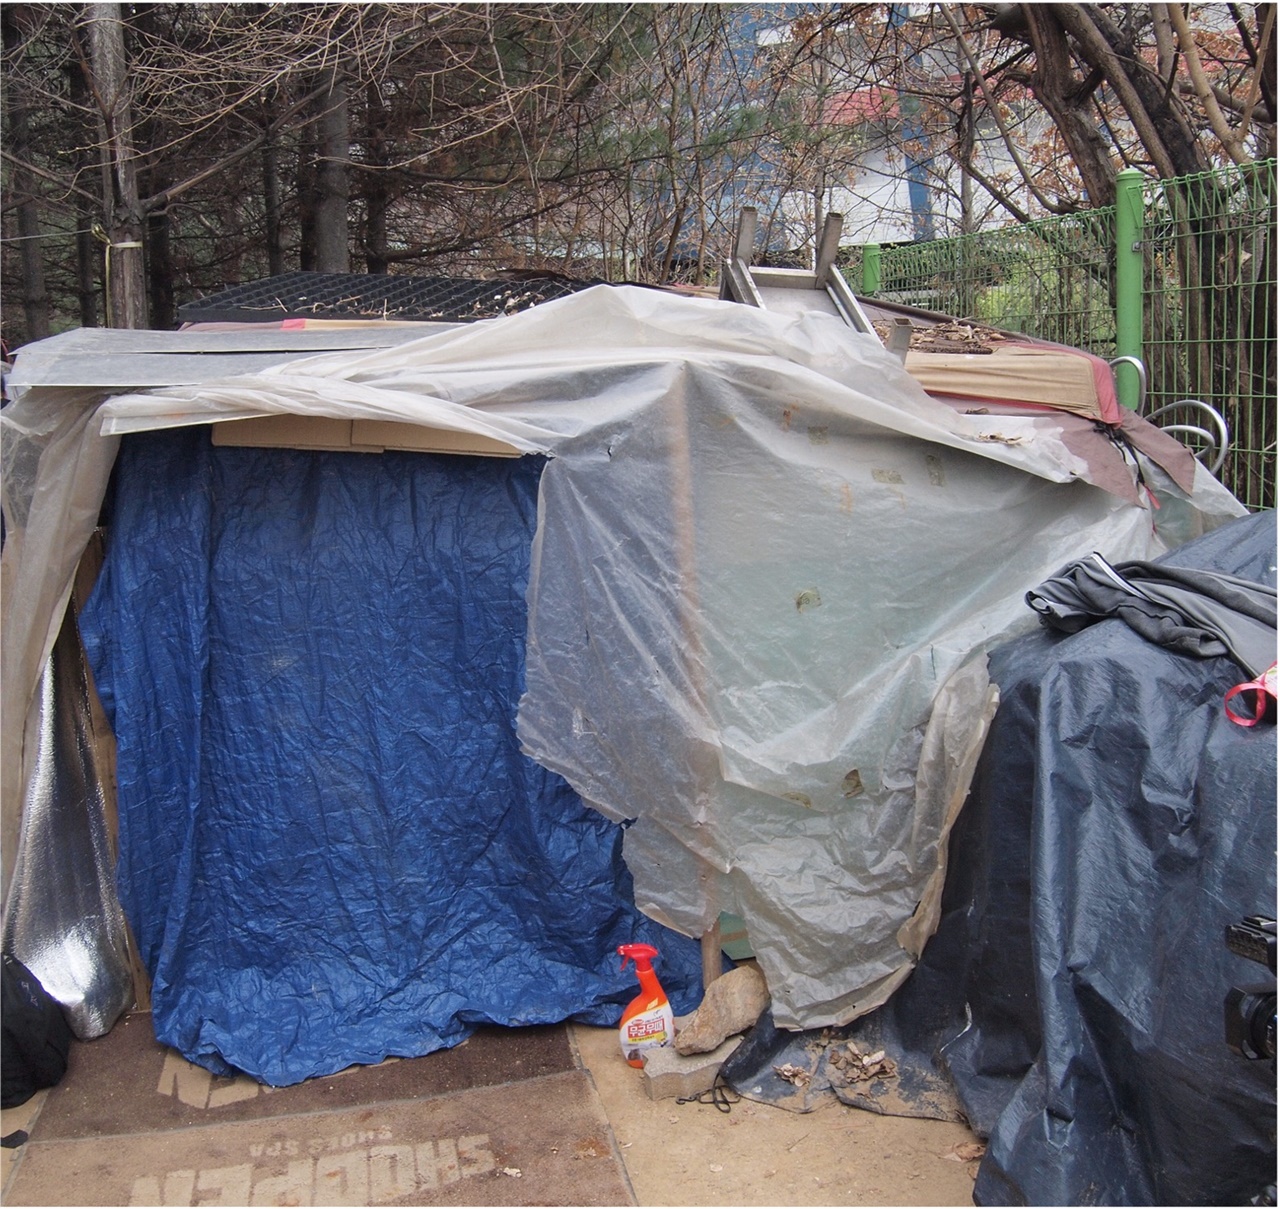 텐트촌은 쪽방, 고시원, 비닐하우스 등과 같이 열악한 주거 환경이다.